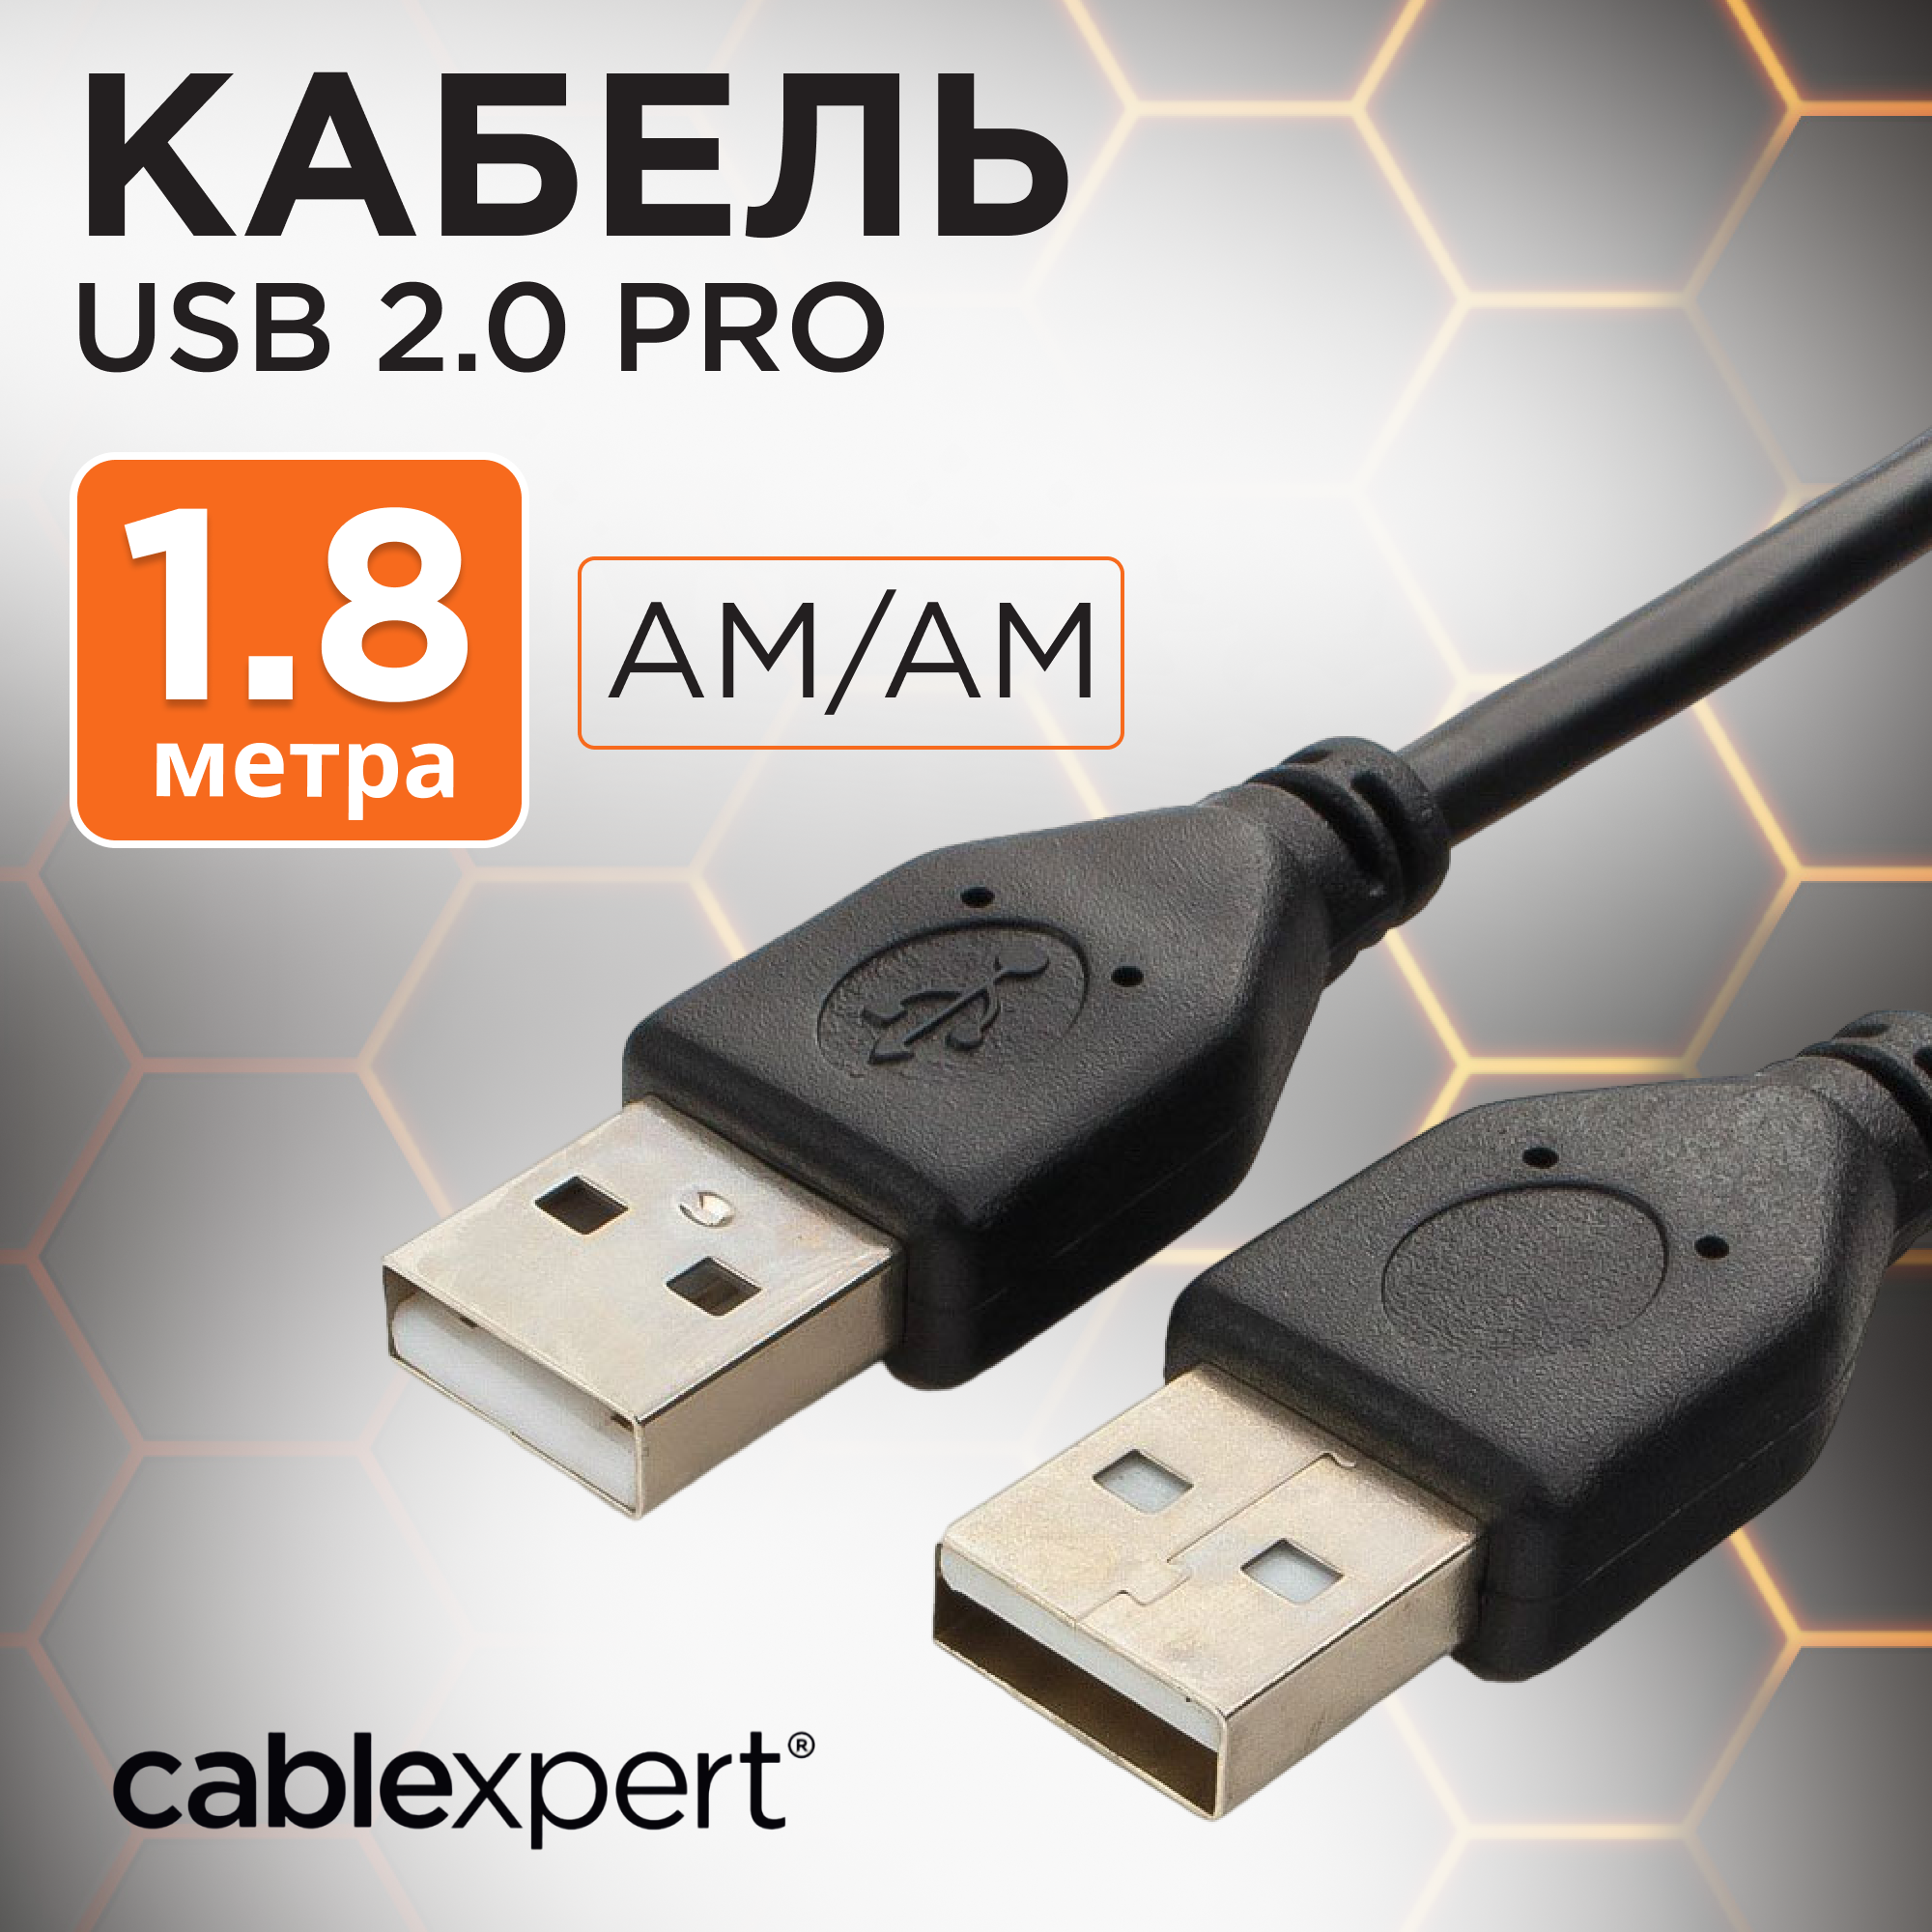 Кабель USB 2.0 Pro Cablexpert CCP-USB2-AMAM-6, AM/AM, 1,8 м, экран, черный